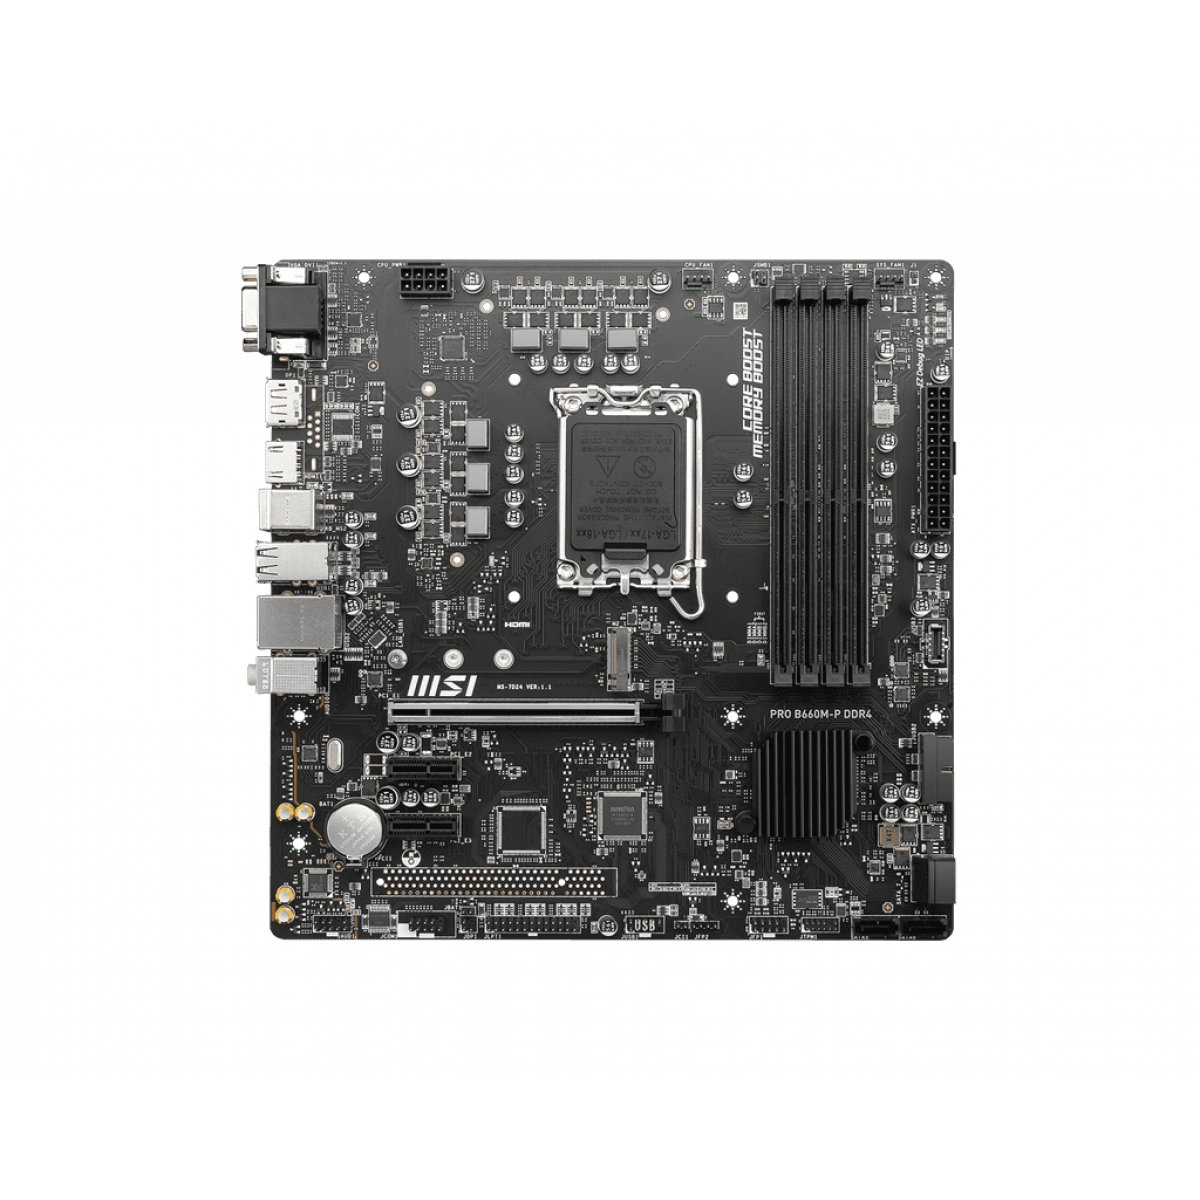 Mainboard MSI PRO B660M-P DDR4 (4 khe RAM) | DDR4 | LGA1700